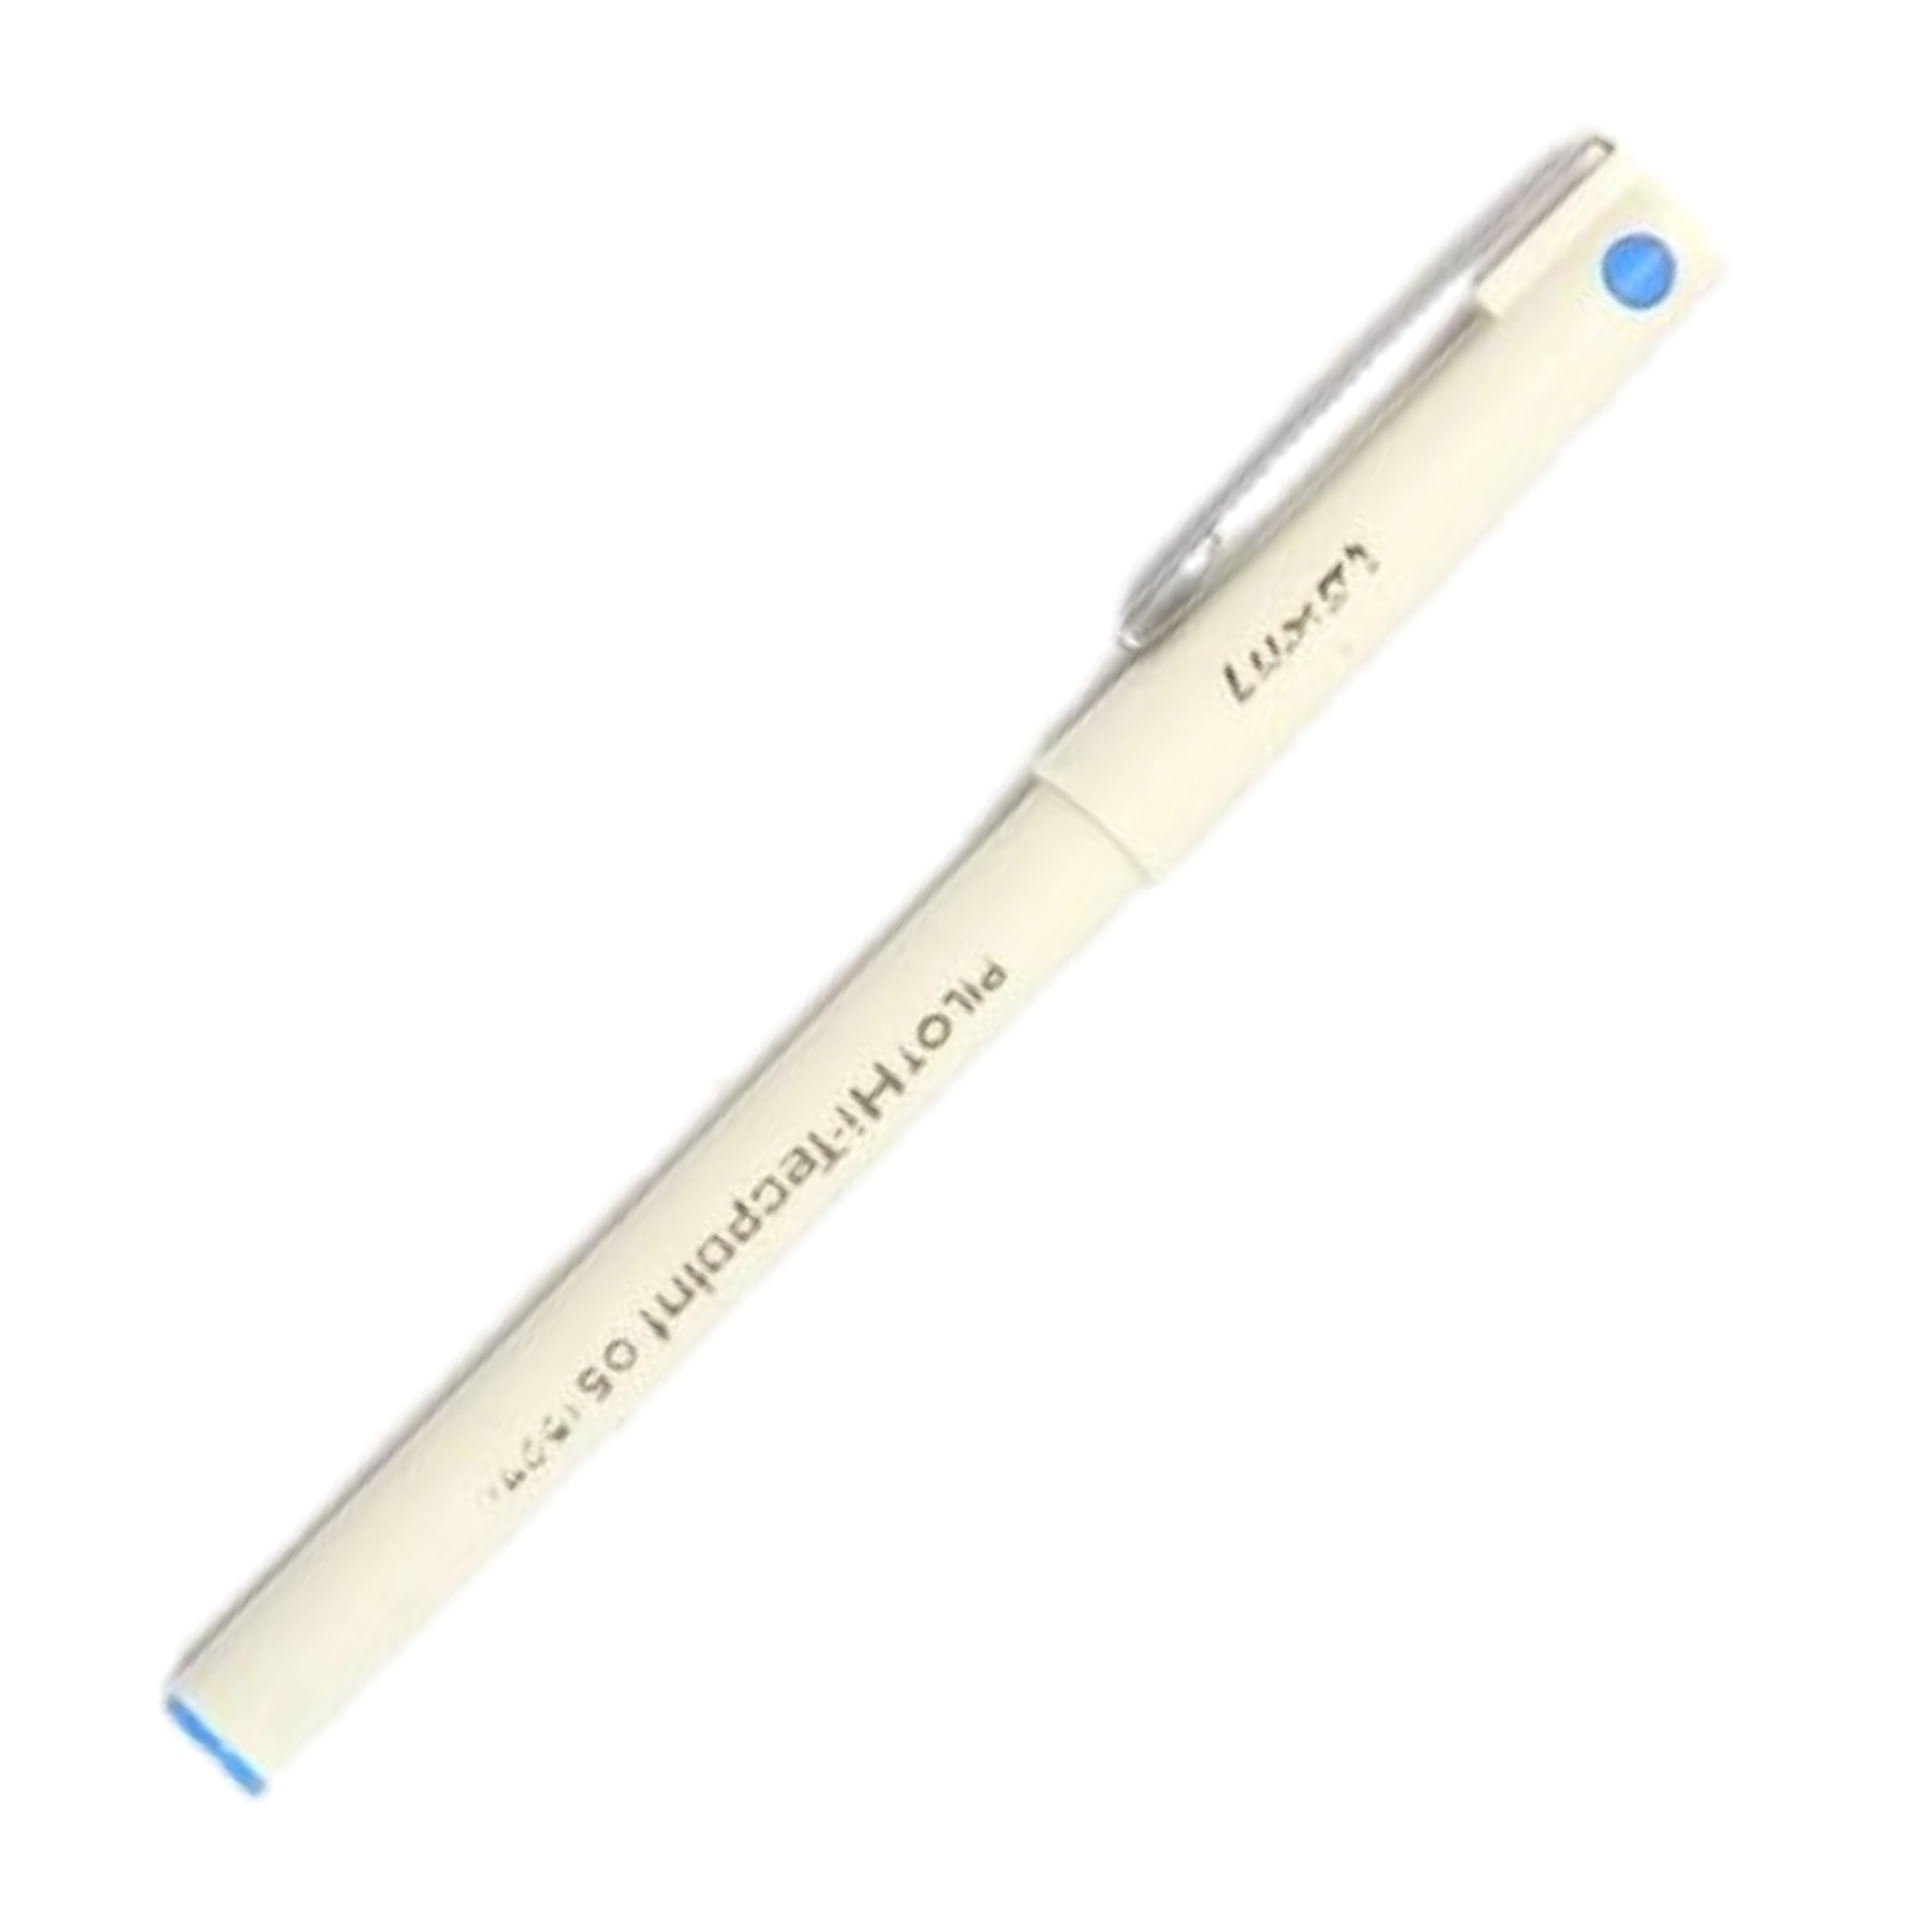 Pilot Hi-Techpoint 05 Super Value Blue Pen, 0.3 mm Pack of 1